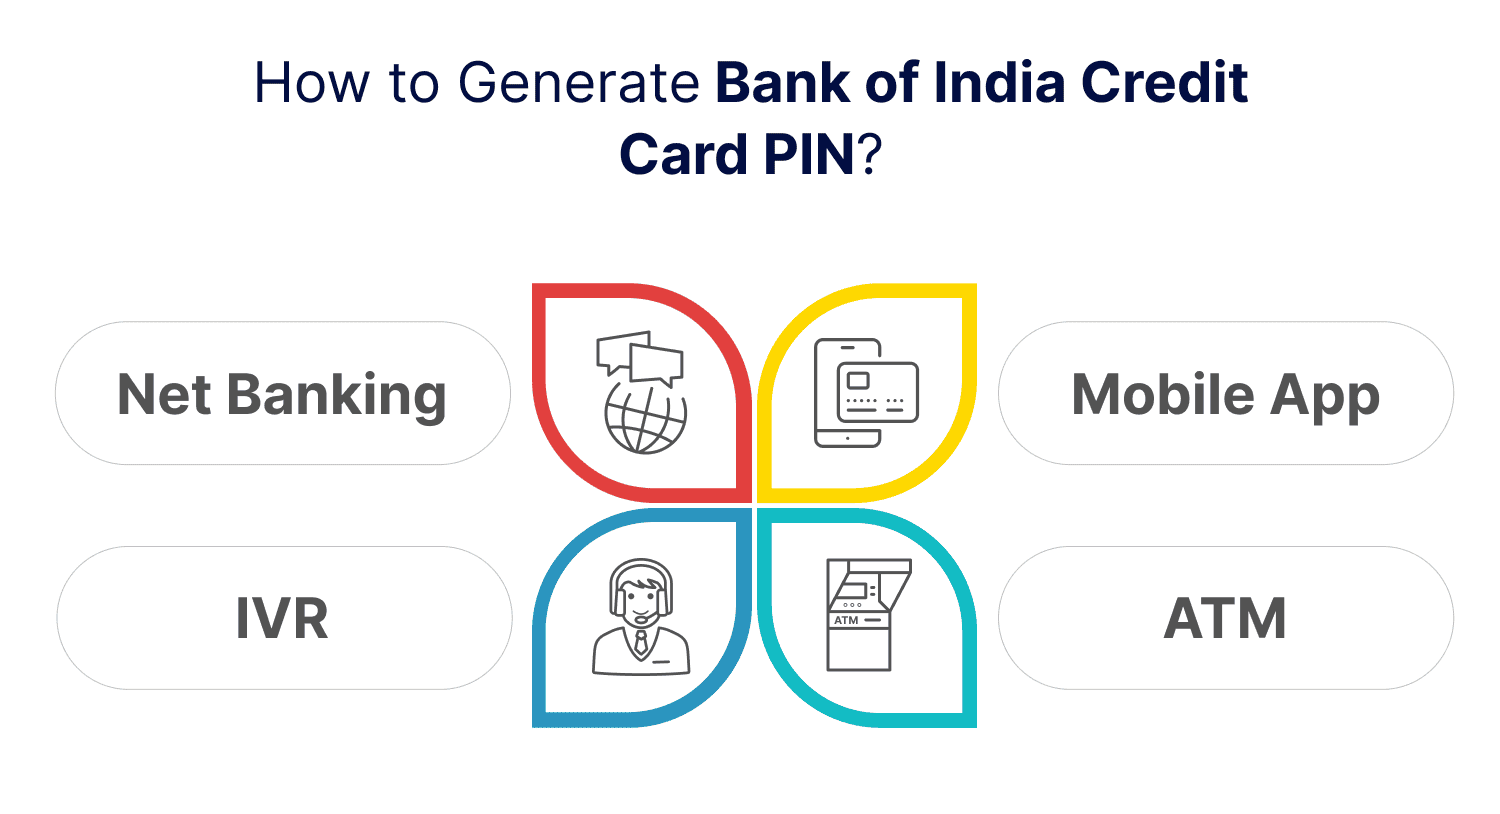 Bank of India Credit Card PIN Generation